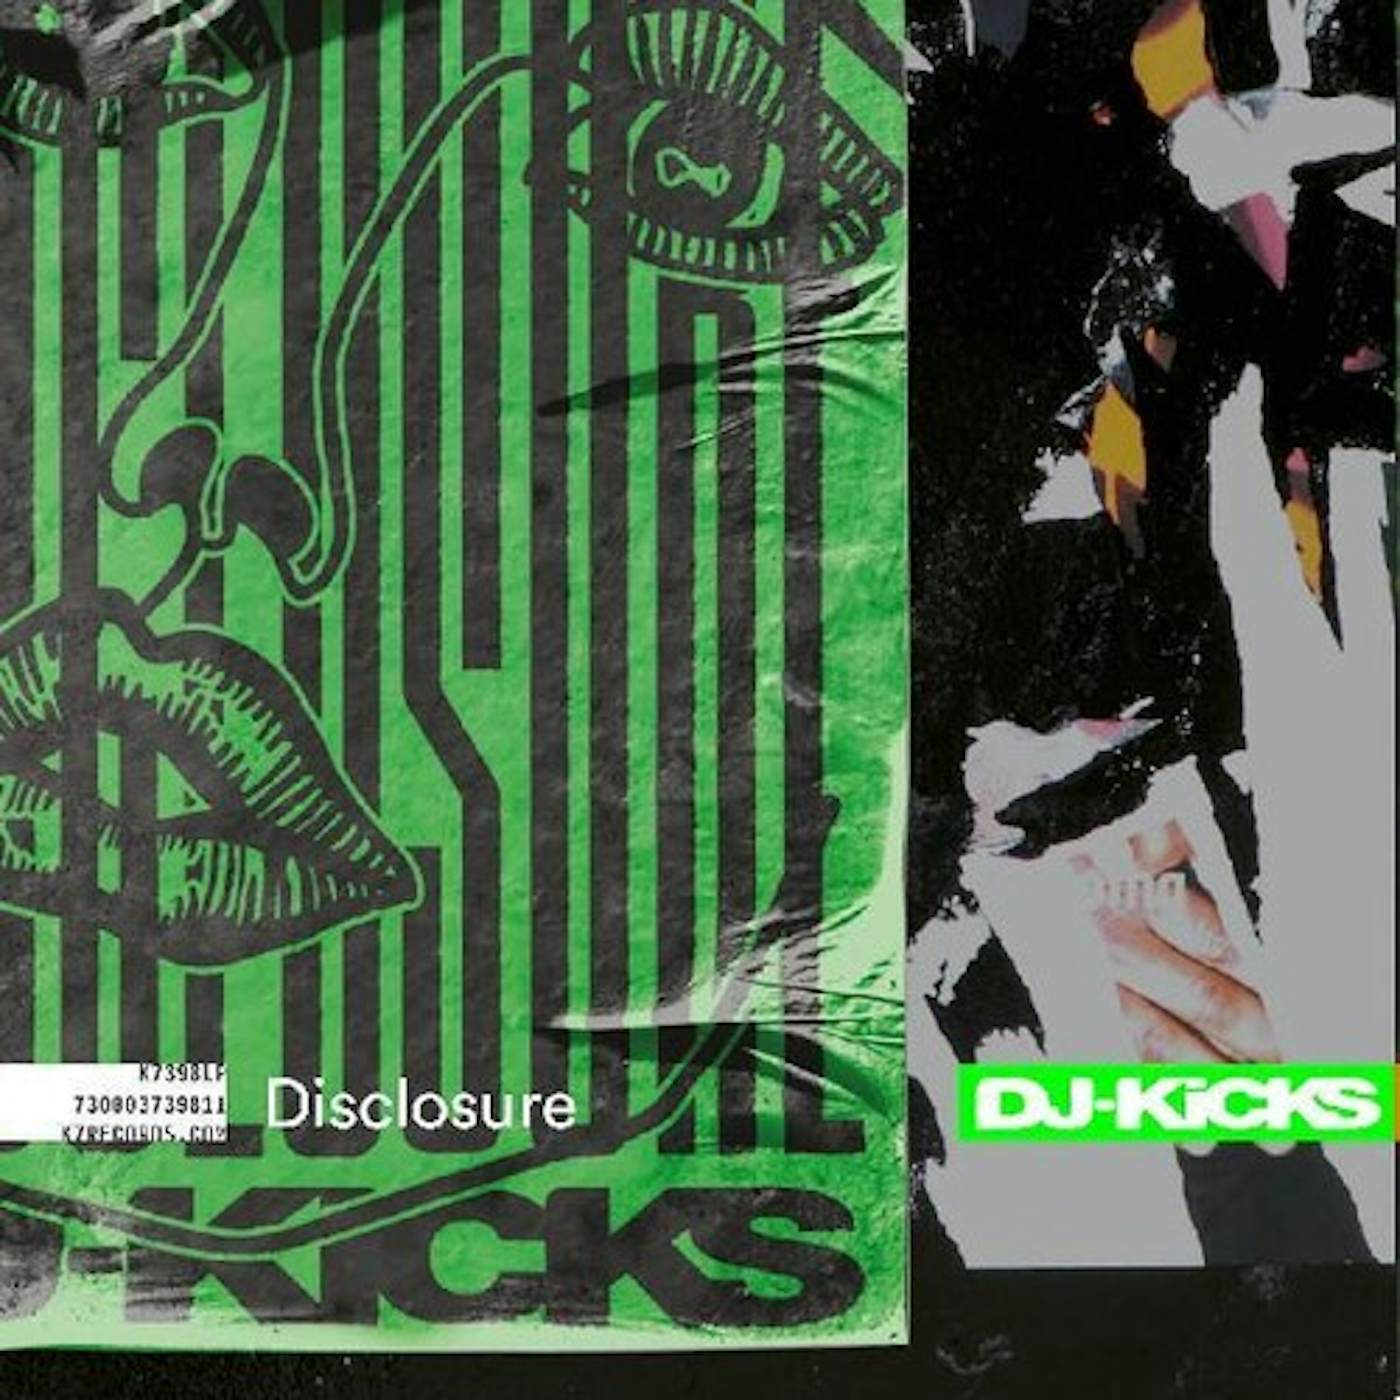 DISCLOSURE DJ-KICKS CD